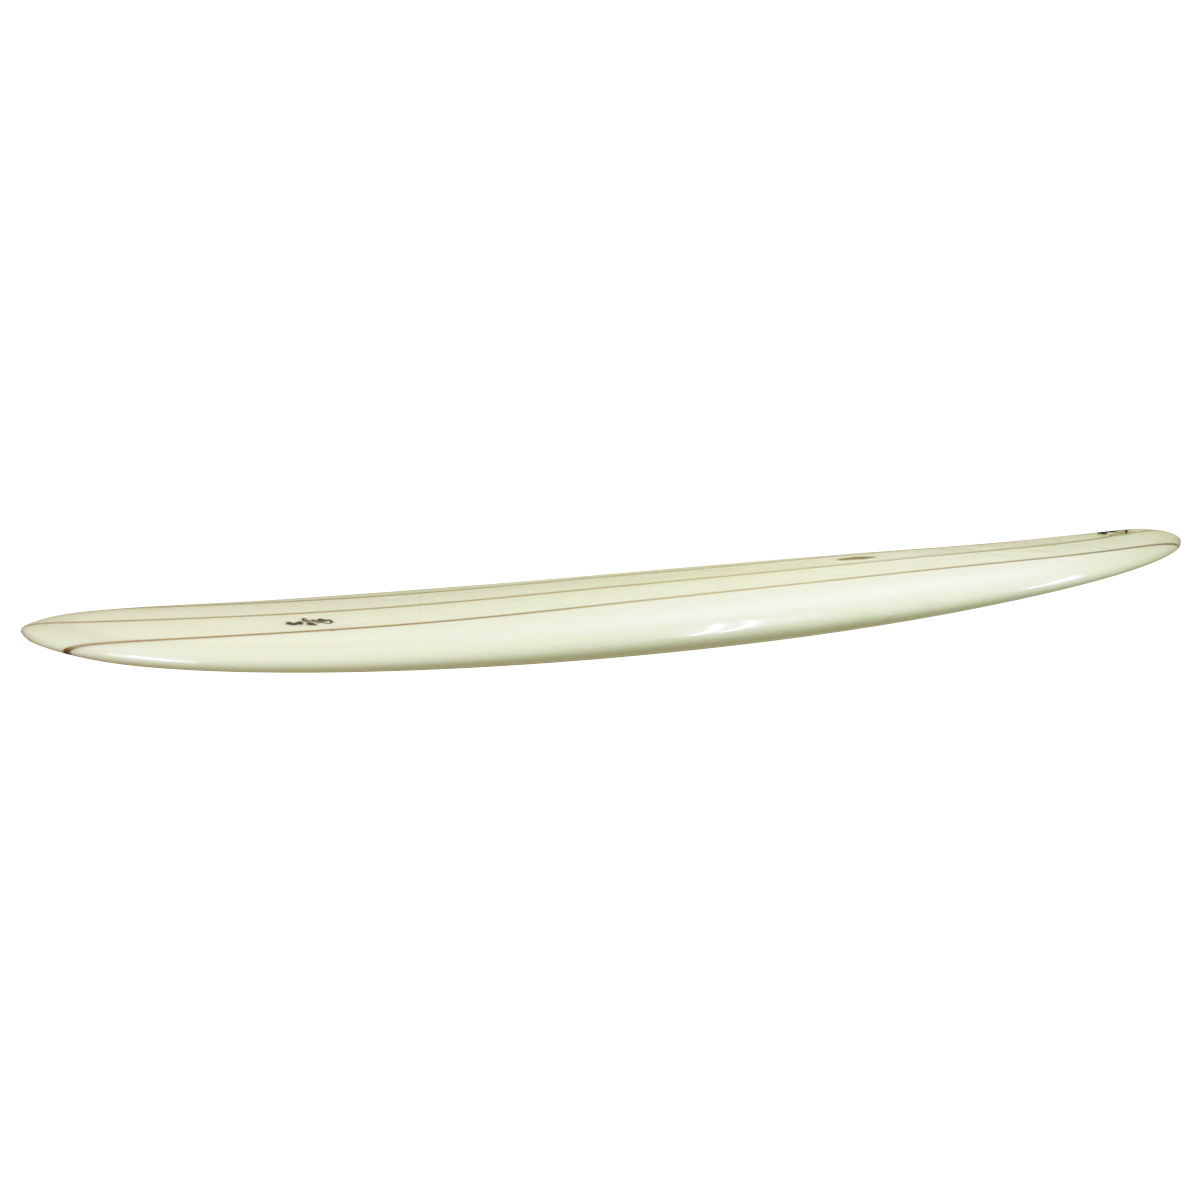 KI SURFBOARDS / Custom Noserider 9`4